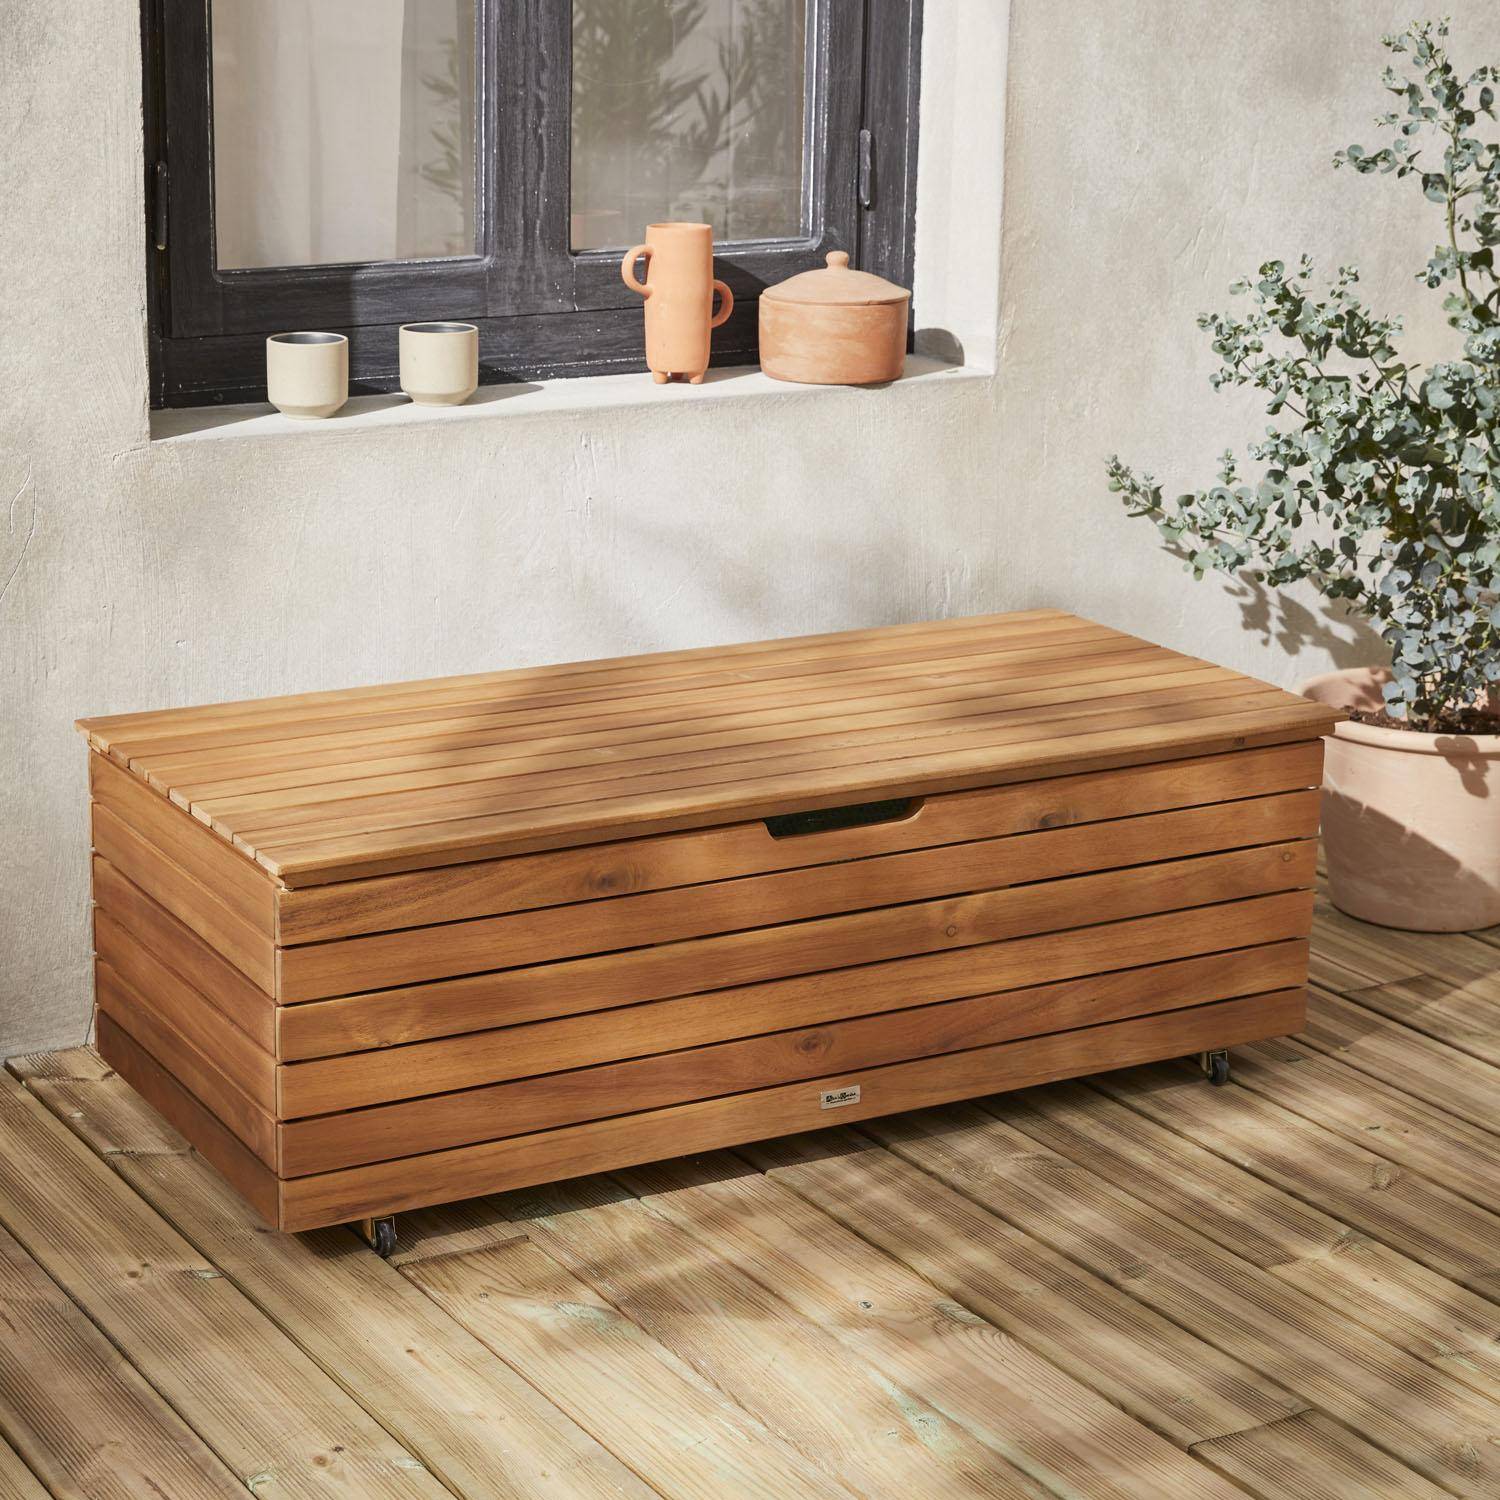 Garden storage box in wood - Saragosse - 110L, cushion storage